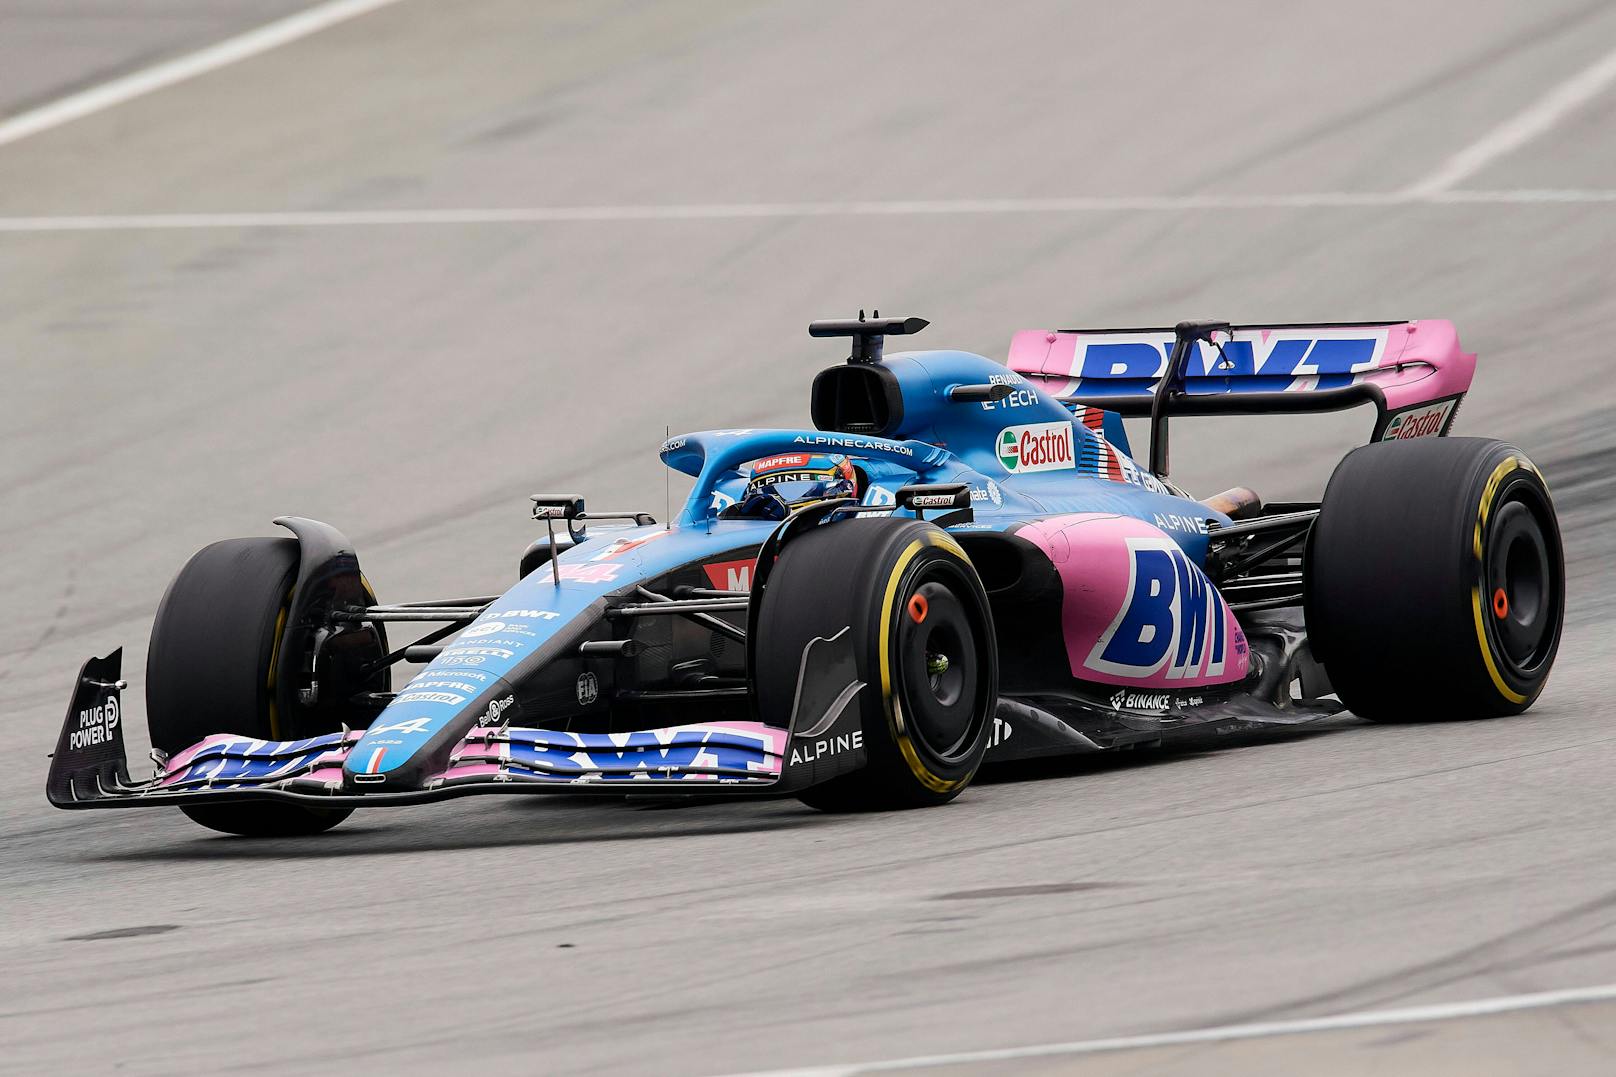 Der Alpine von Fernando Alonso und Esteban Ocon glänzt in Blau und Rosa